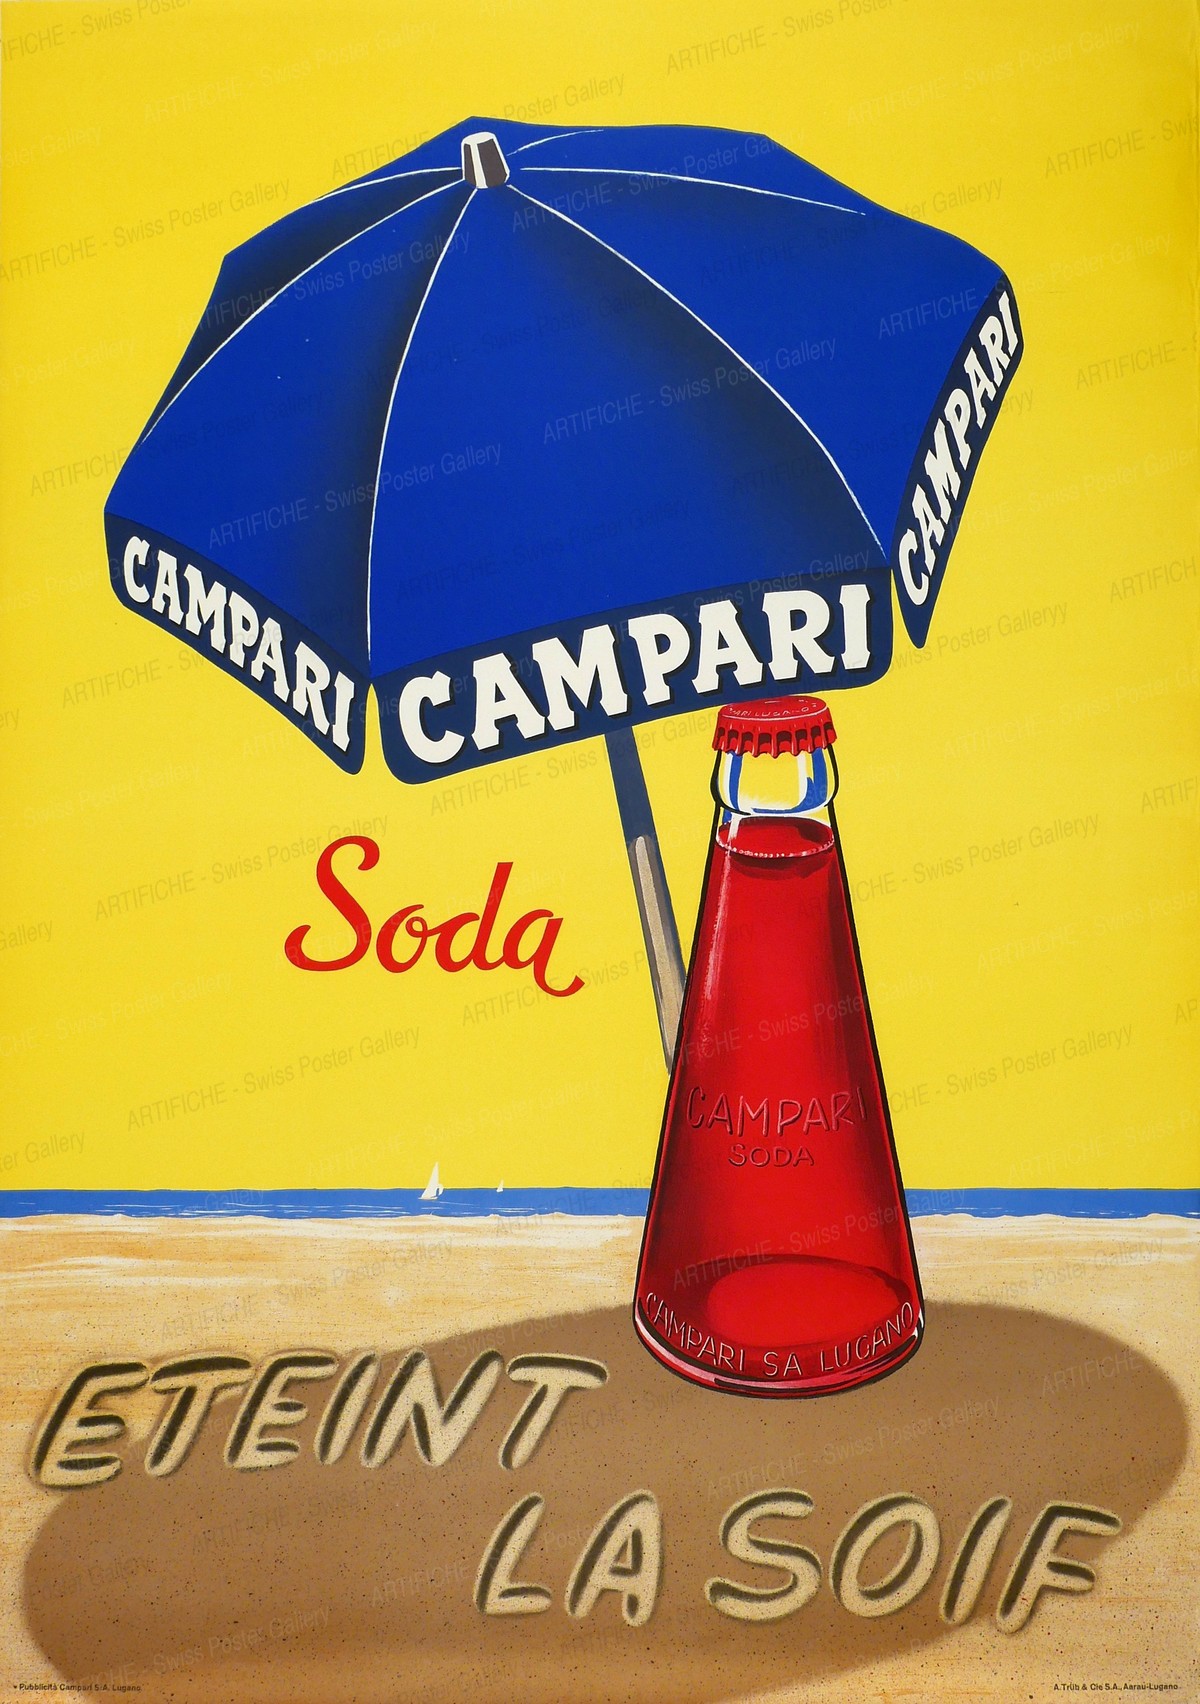 Campari Soda – Eteint la Soif, Artist unknown